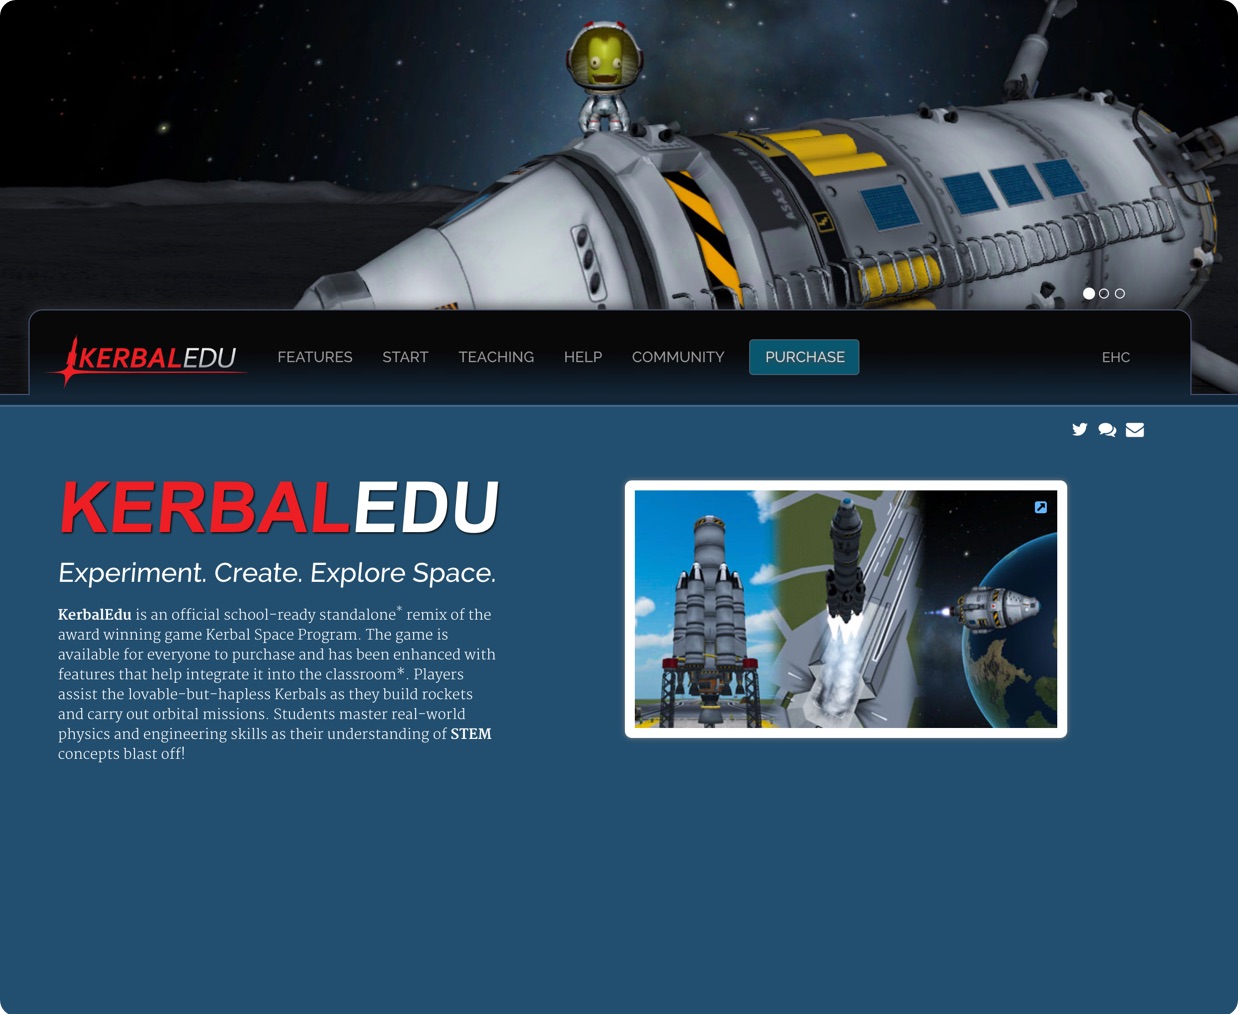 KerbalEdu Website Cover Image